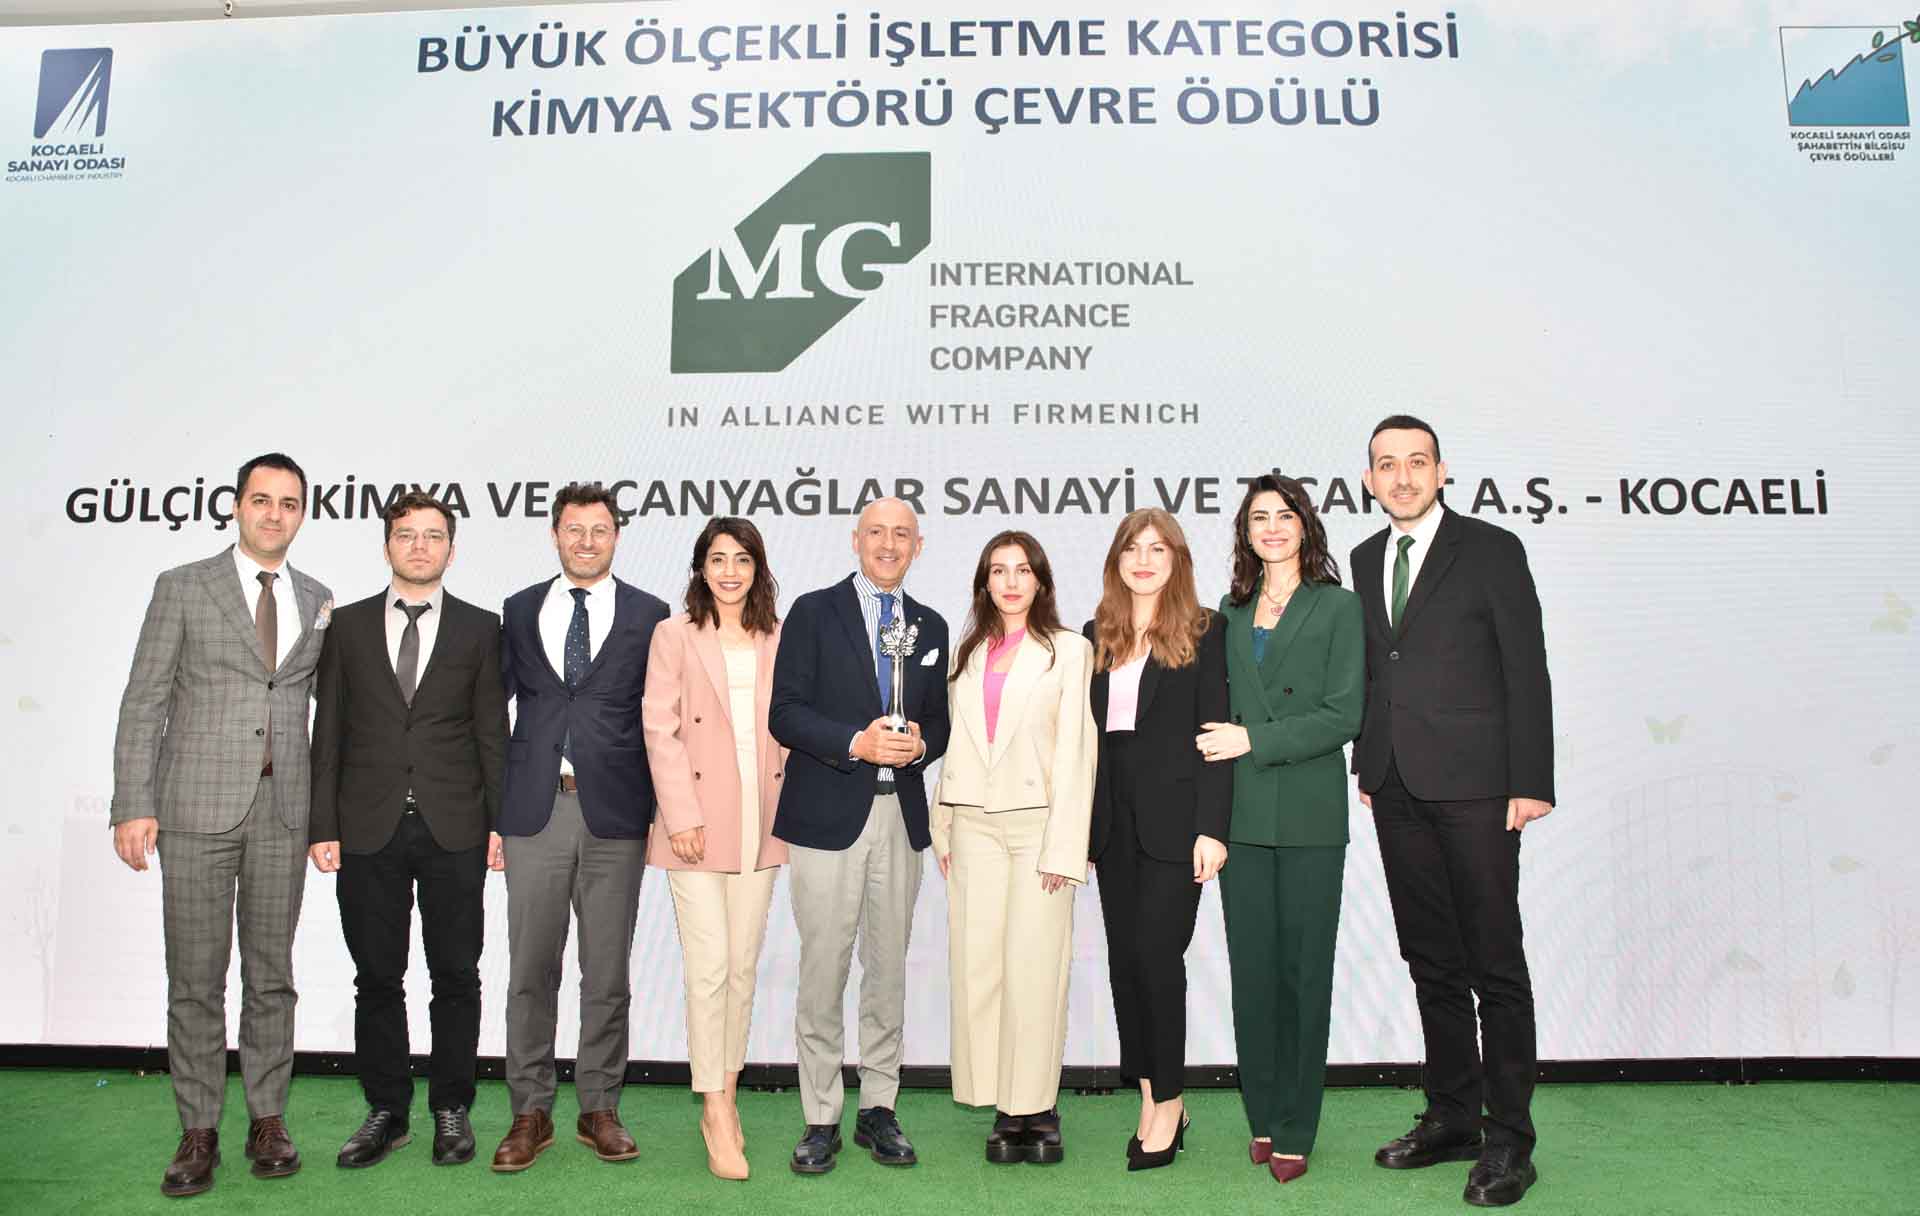 شركة MG International تفوز بجائزتها الثانية في تركيا لمشاريعها الصديقة للبيئة